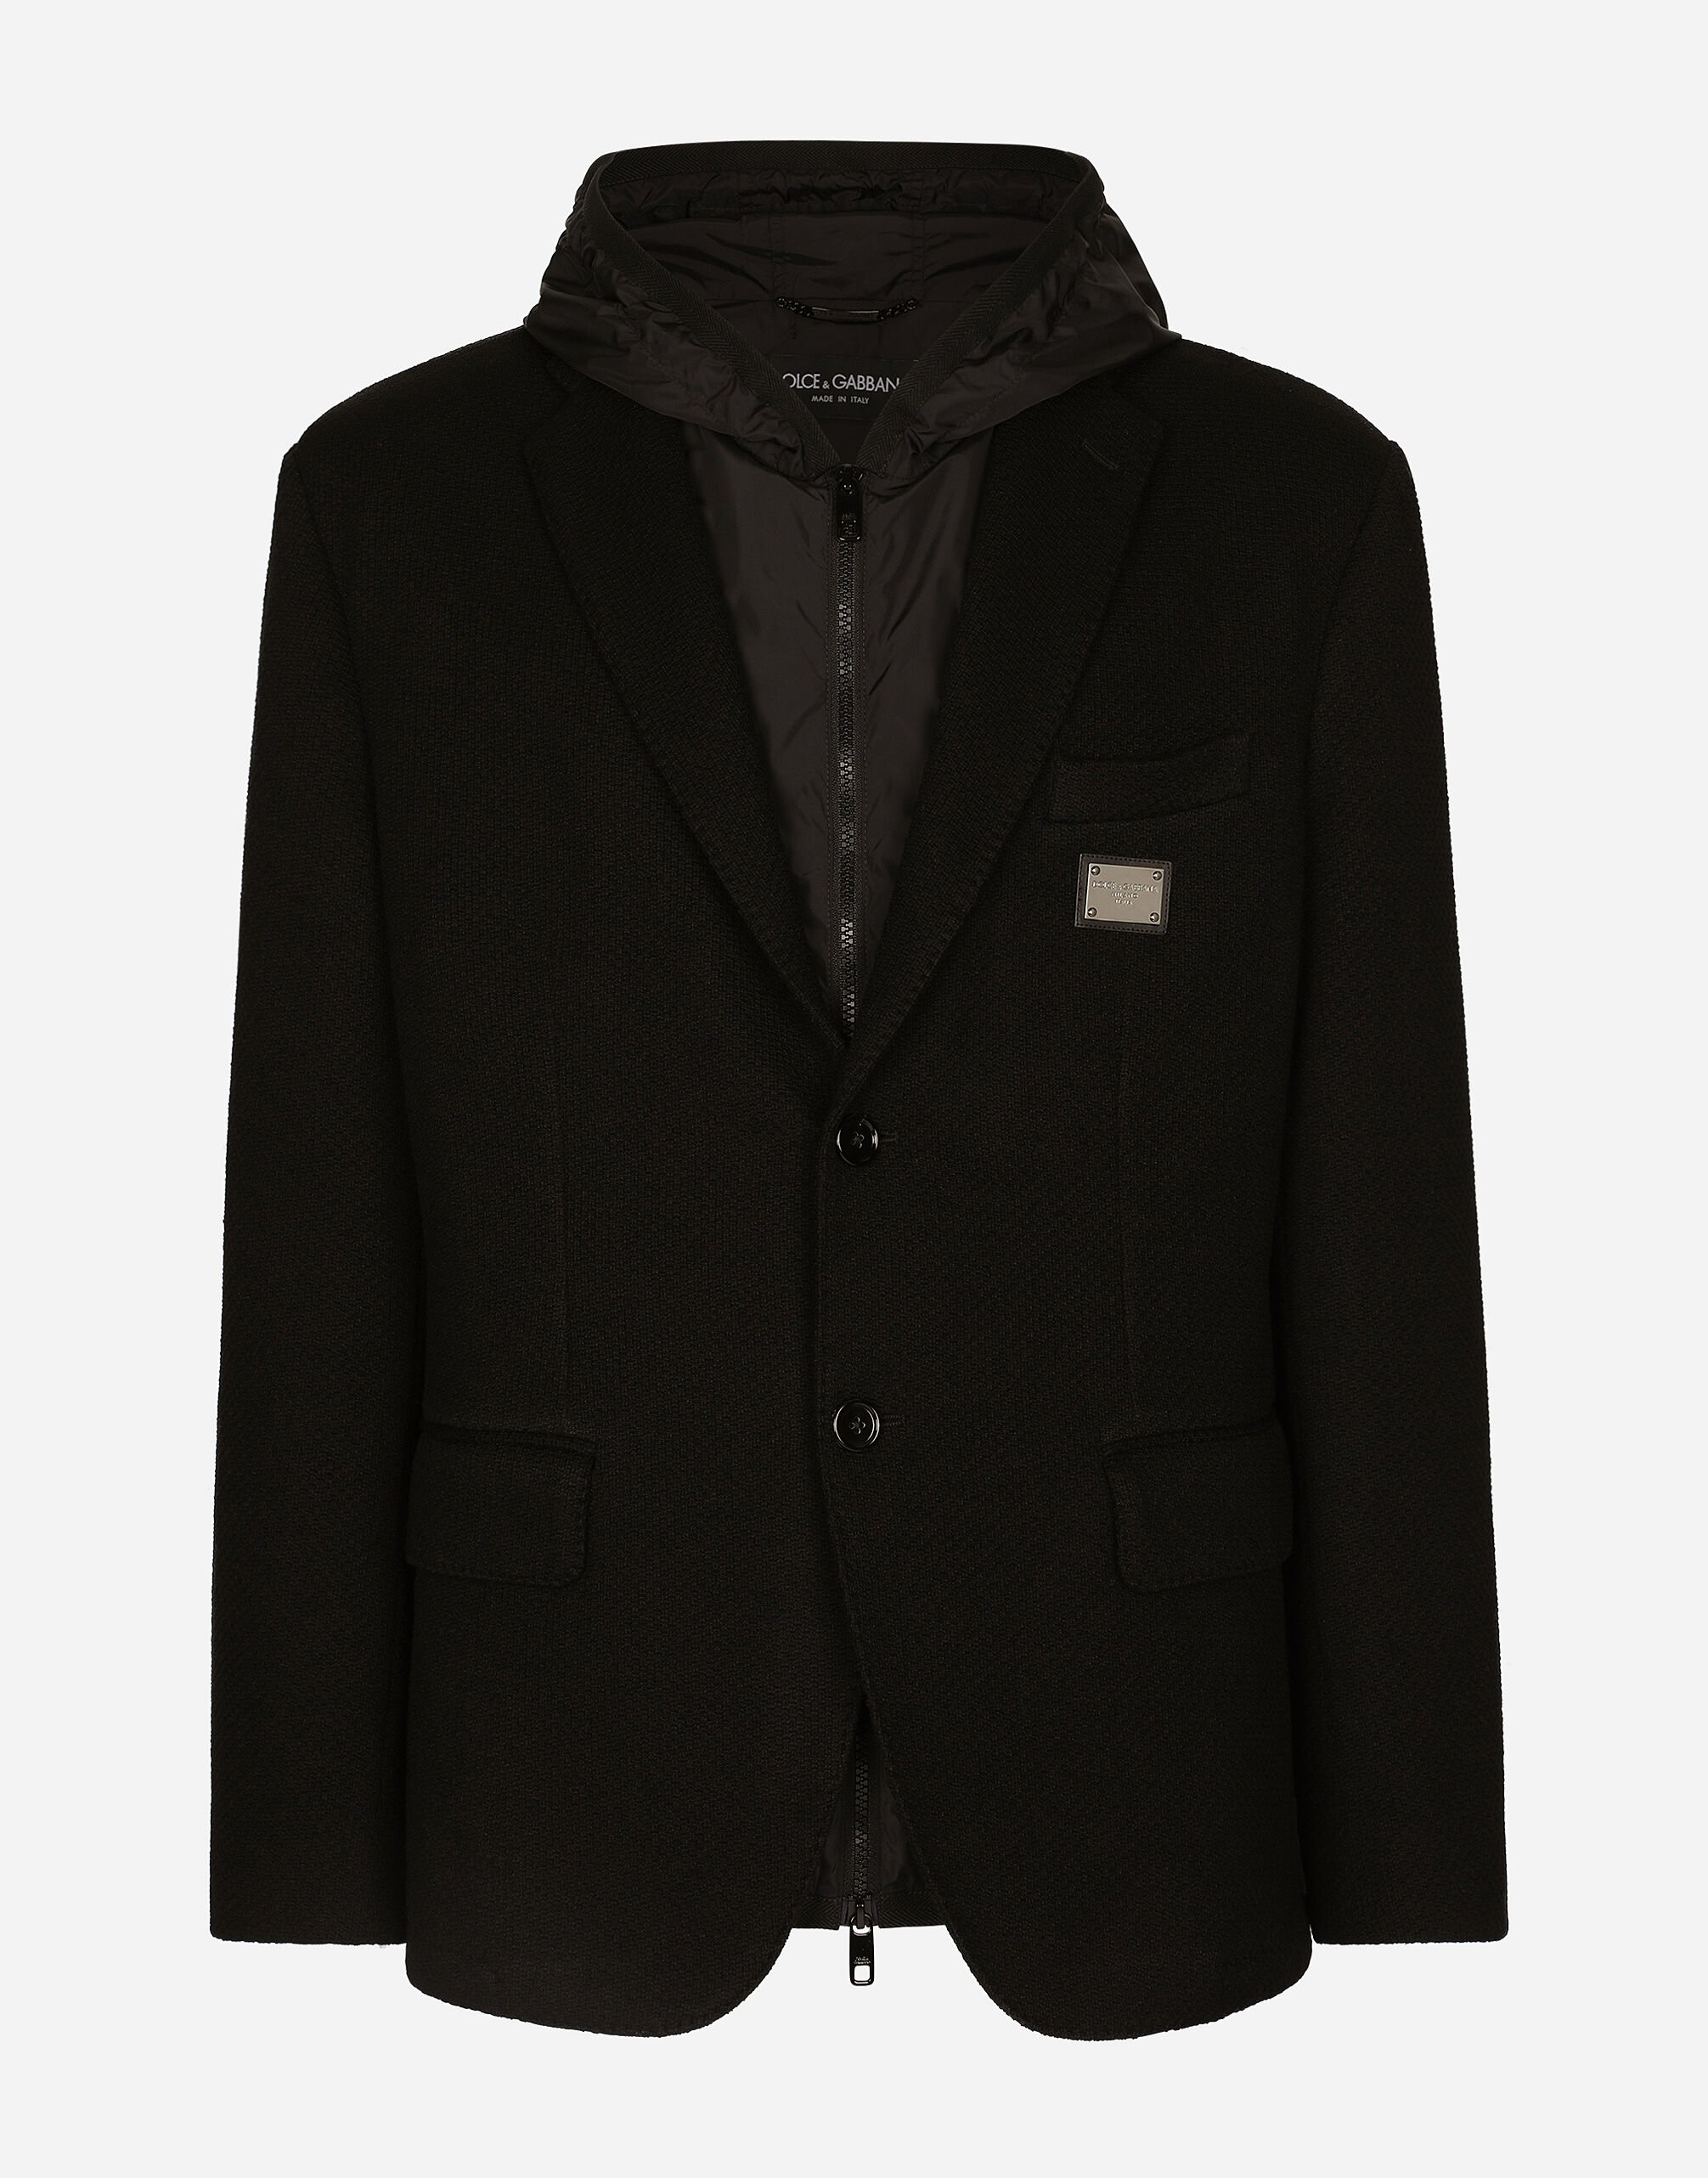 Dolce&Gabbana Hooded jersey jacket and nylon vest Grey G041KTGG914